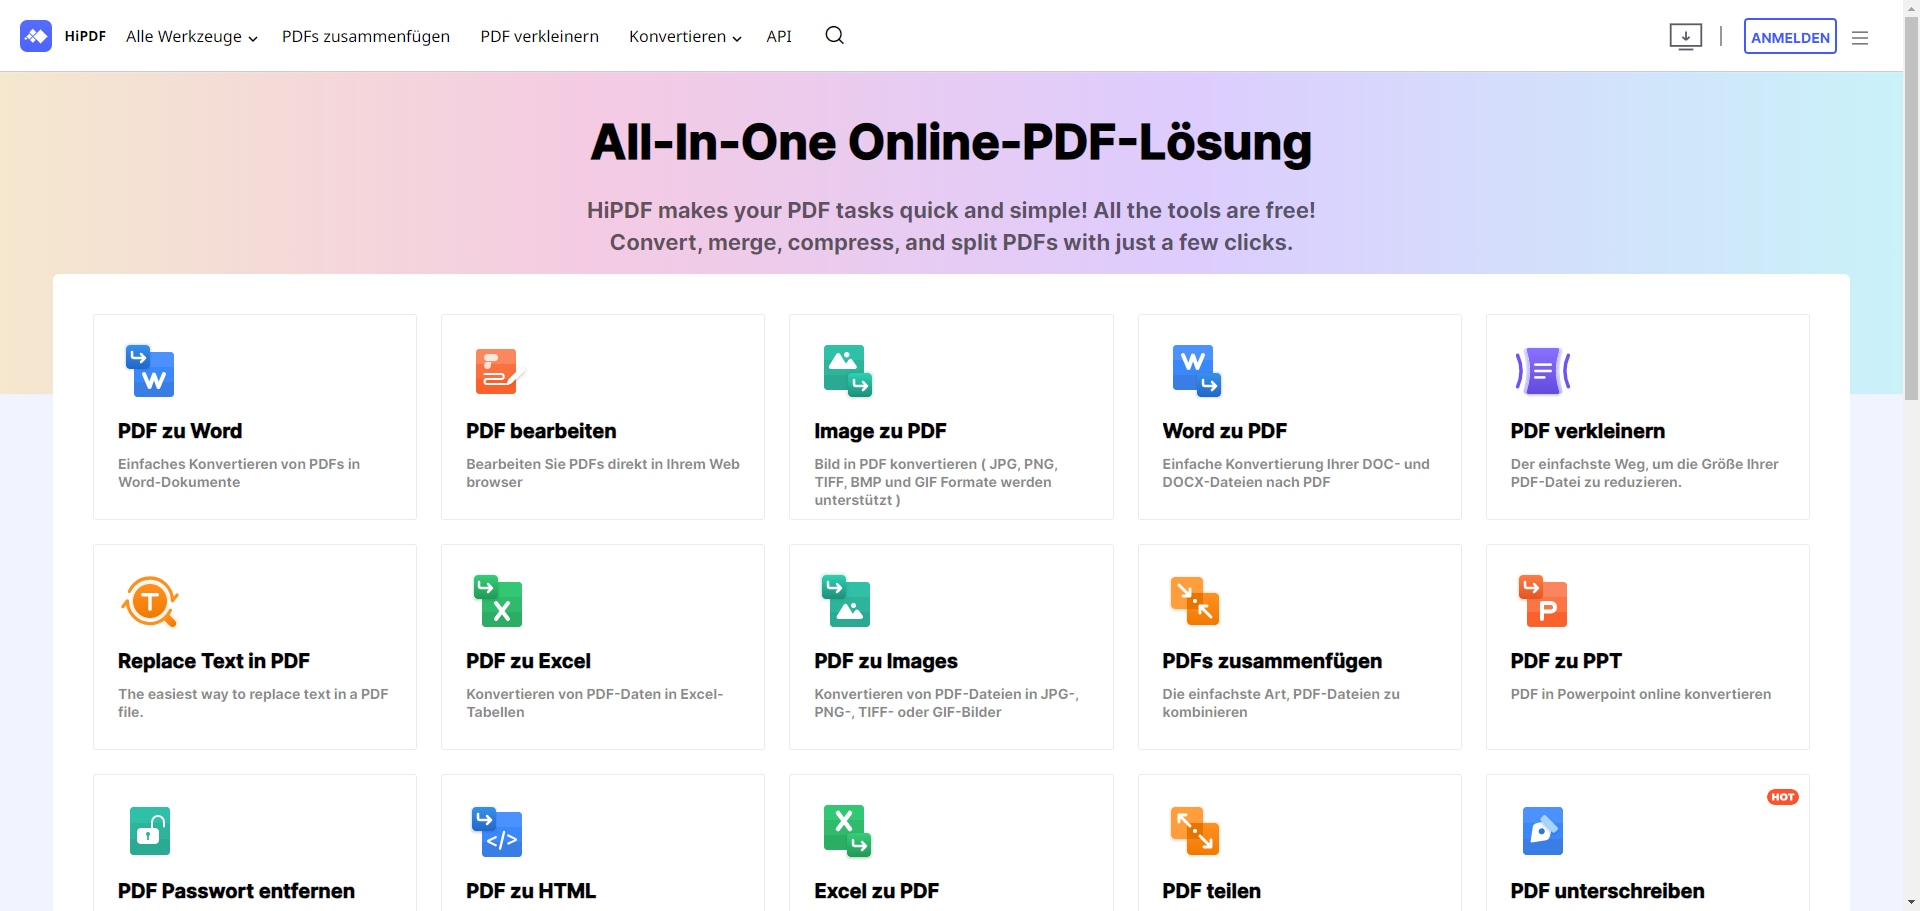 Um auf das Online-HiPDF-Bearbeitungswerkzeug zuzugreifen, müssen Sie zunächst auf https://www.hipdf.com/de gehen. Dort finden Sie eine Liste, in der die von HiPDF angebotenen Bearbeitungstools angezeigt werden. Klicken Sie auf die Schaltfläche "PDF bearbeiten".